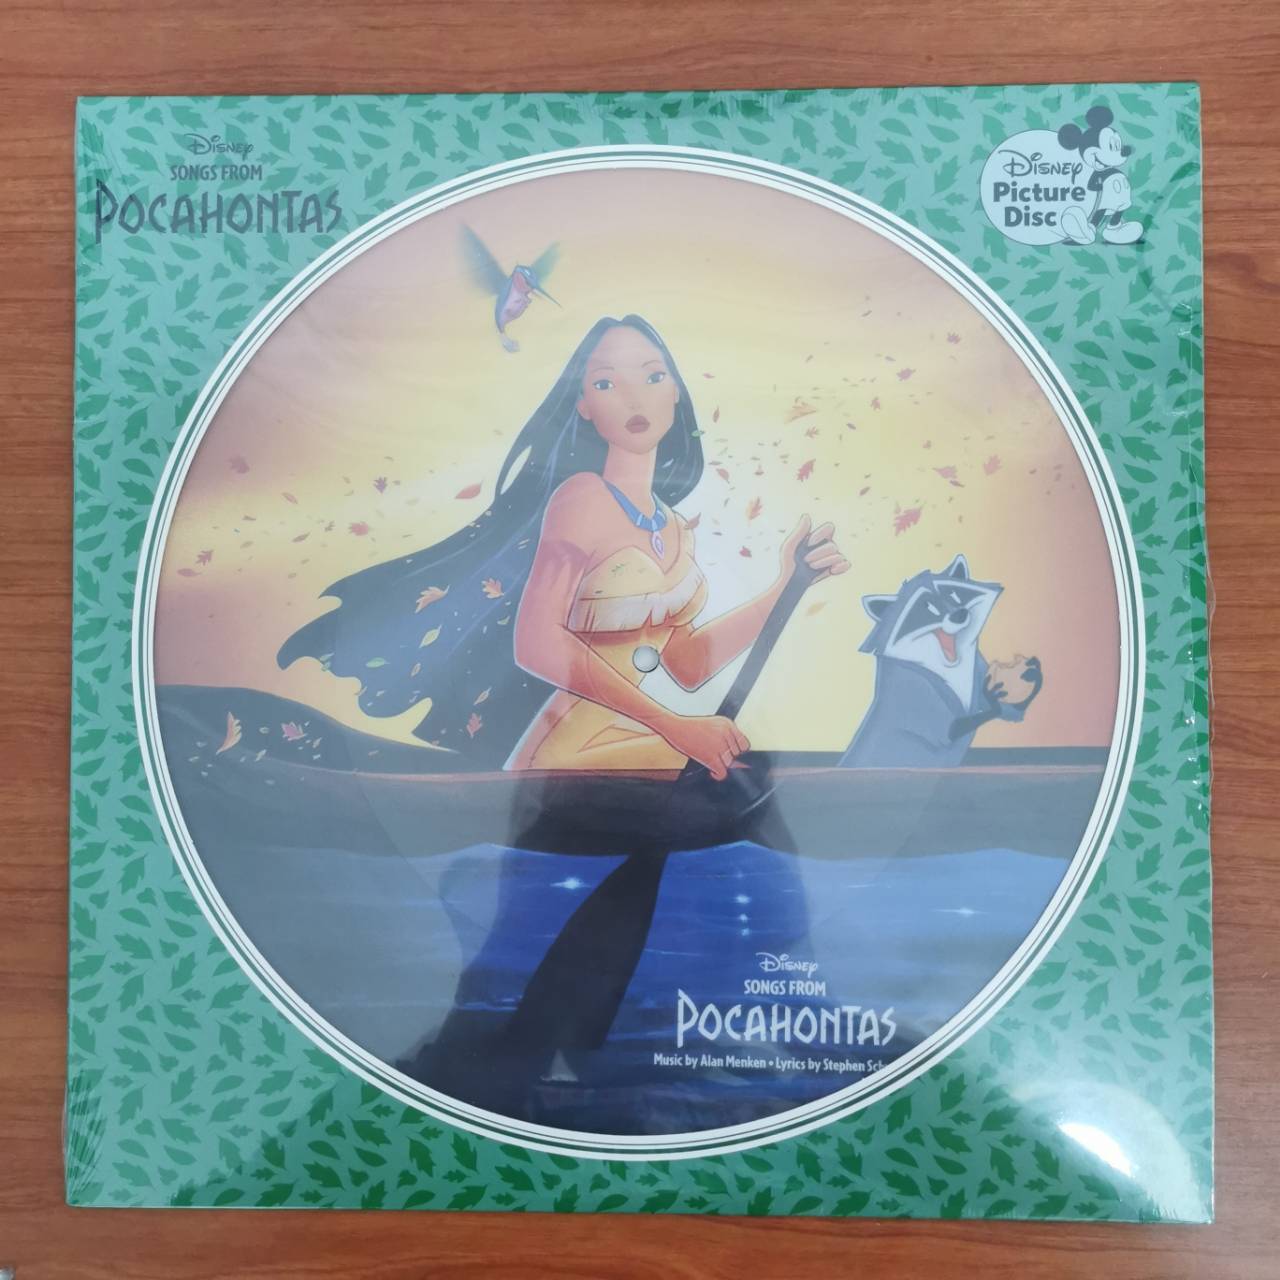 แผ่นเสียง Songs From Pocahontas (Soundtrack) picture disc แผ่นเสียงใหม่ ซีล